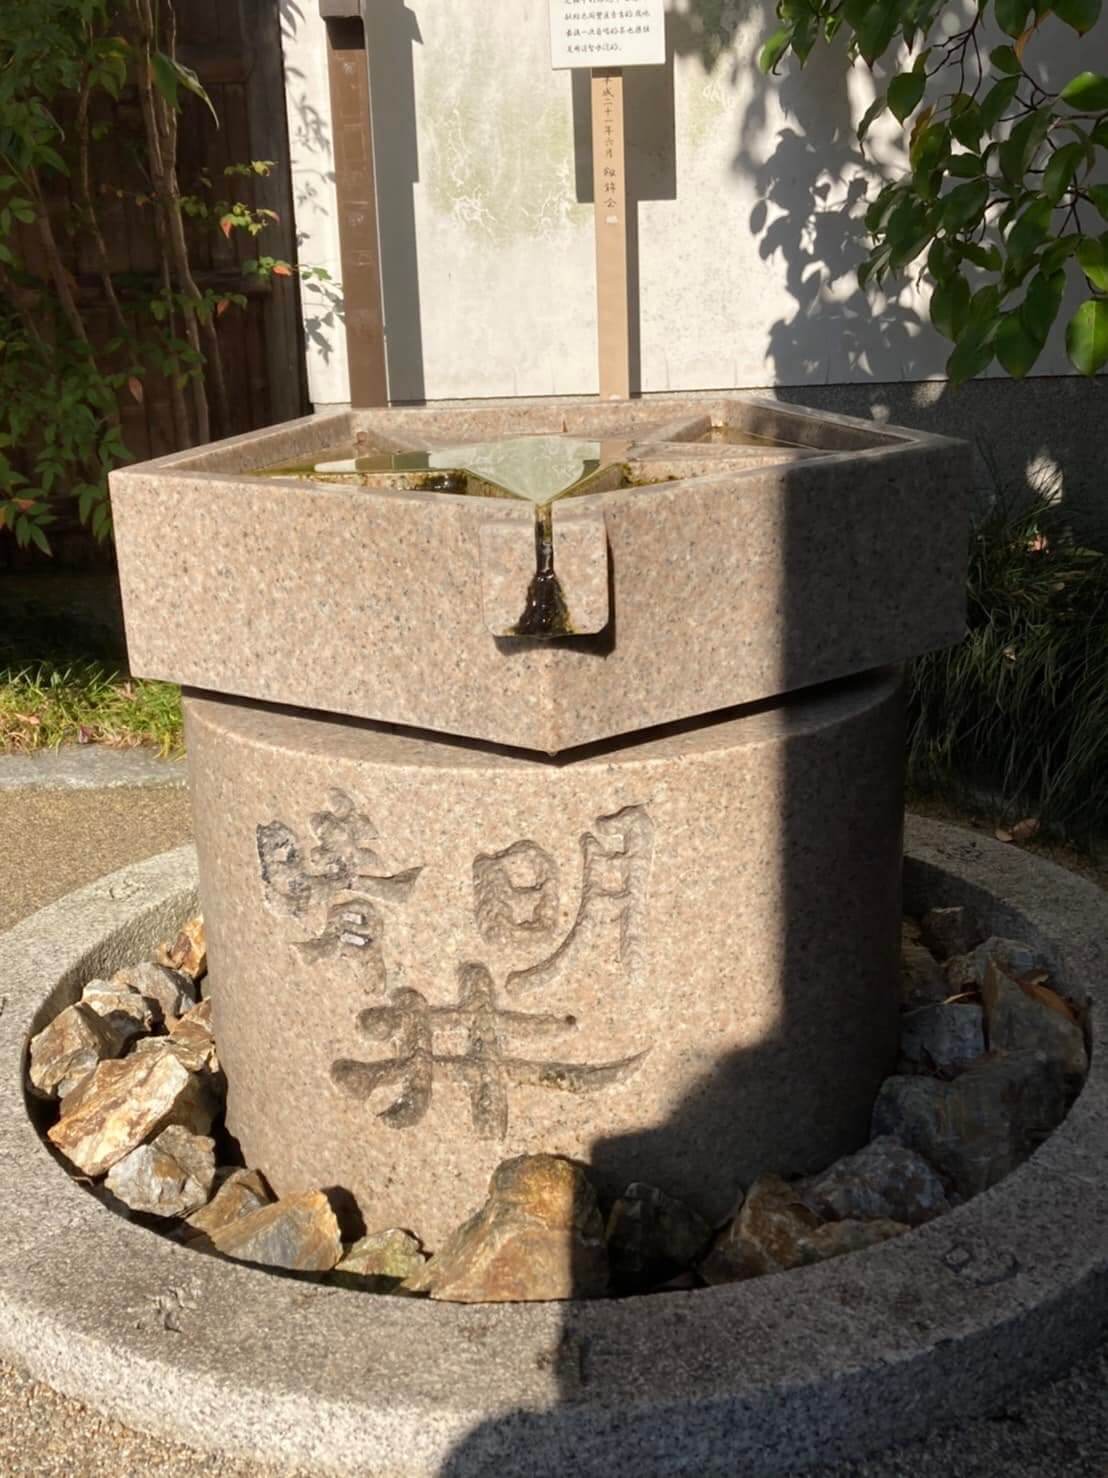 晴明神社井戸を撮影した写真